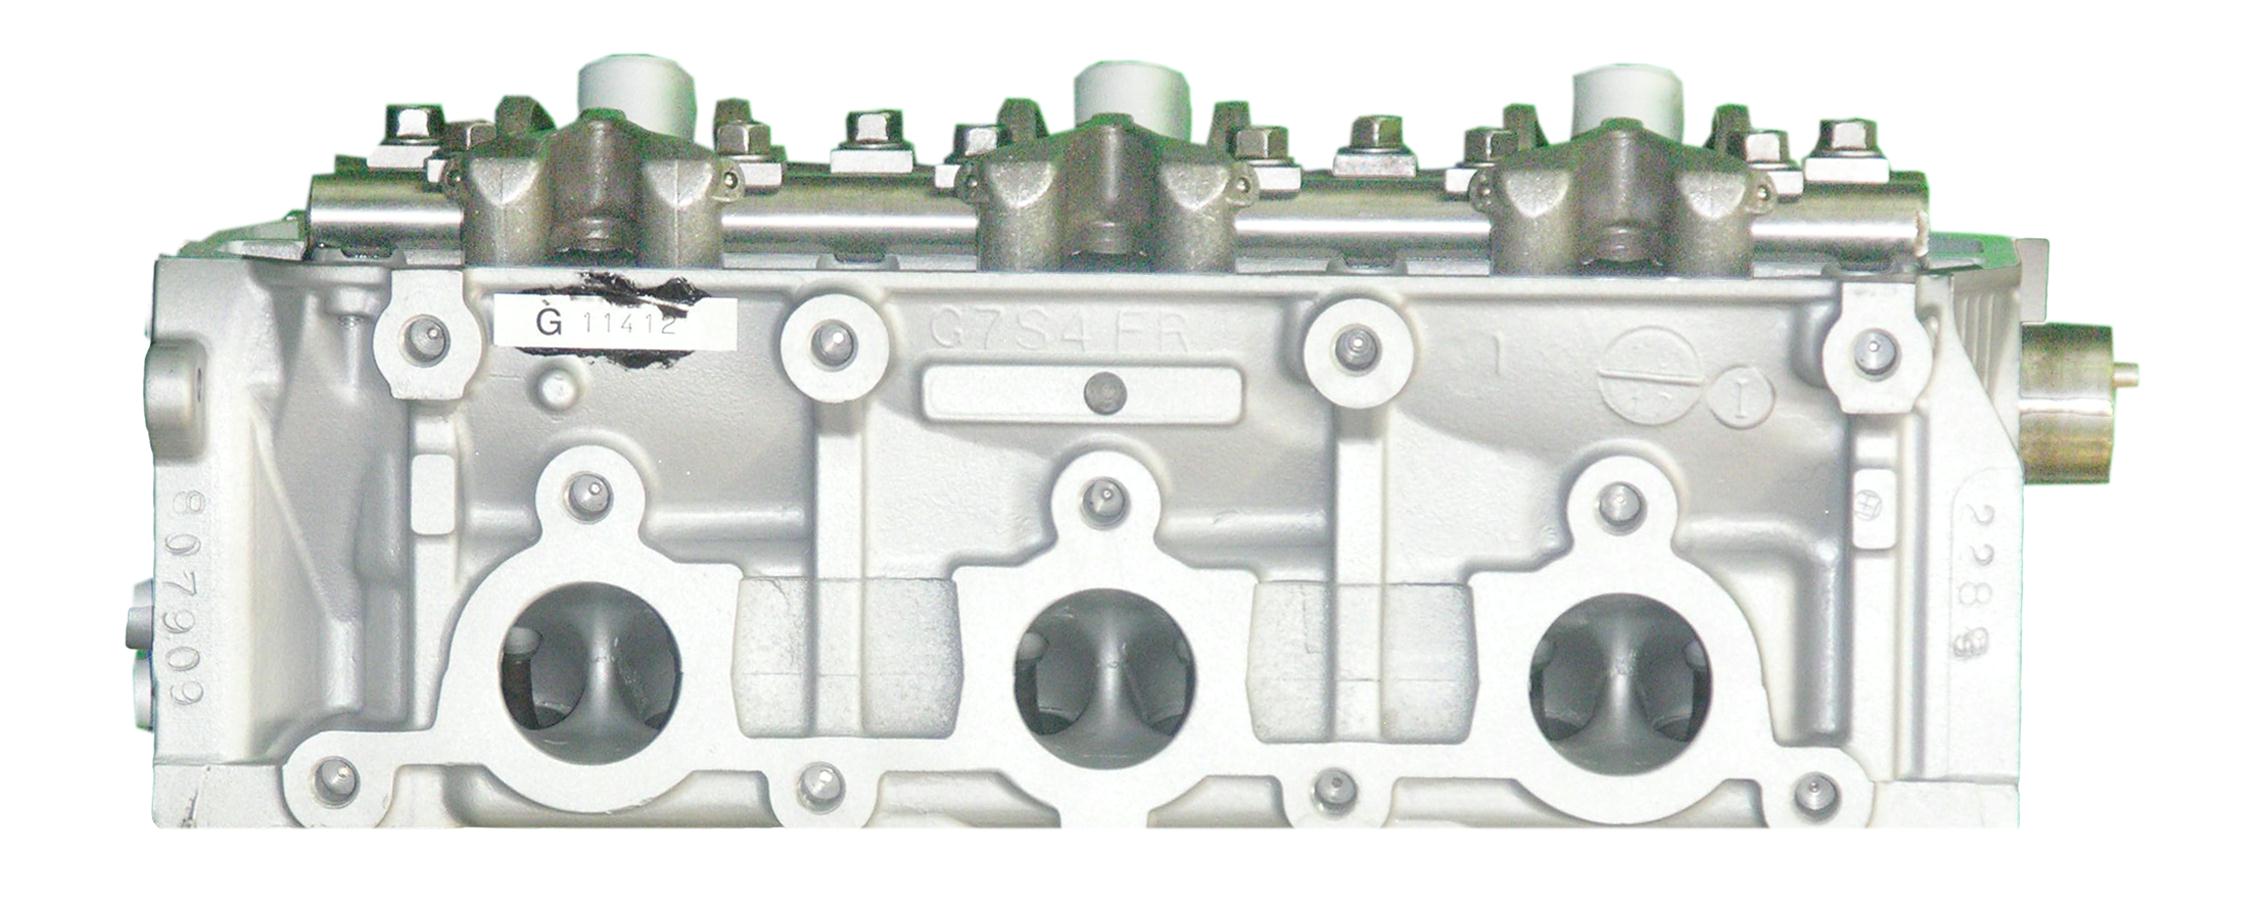 Mitsubishi 3.0 V6L Remanufactured Cylinder Head - 6/94-2003 6G72